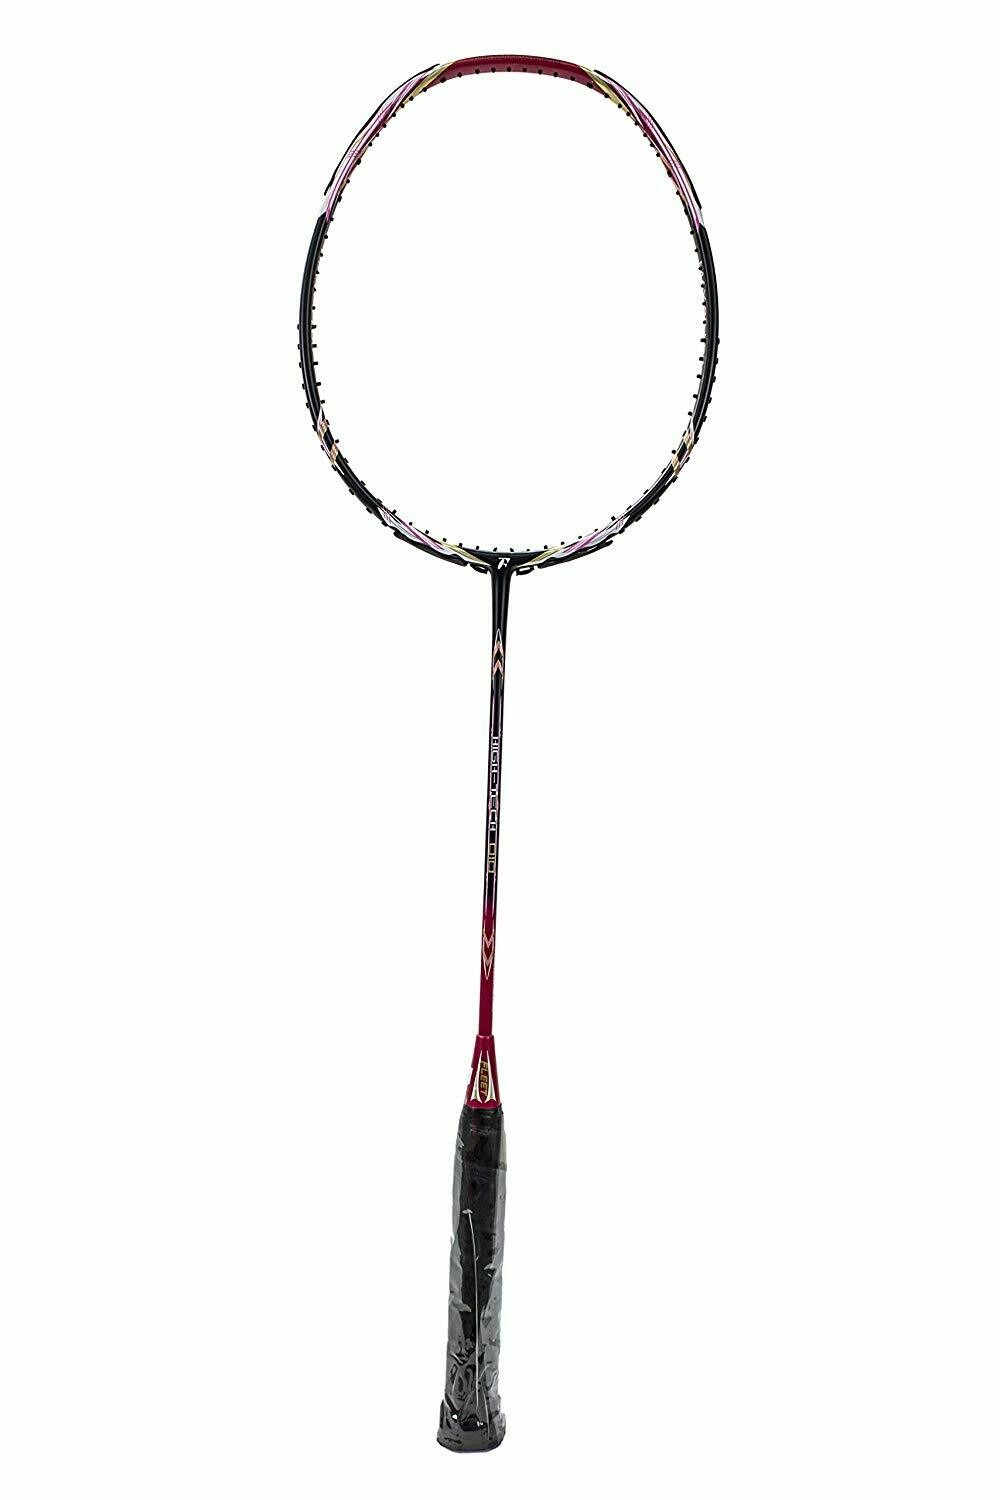 Fleet High Tech 010 Pink Badminton Racket